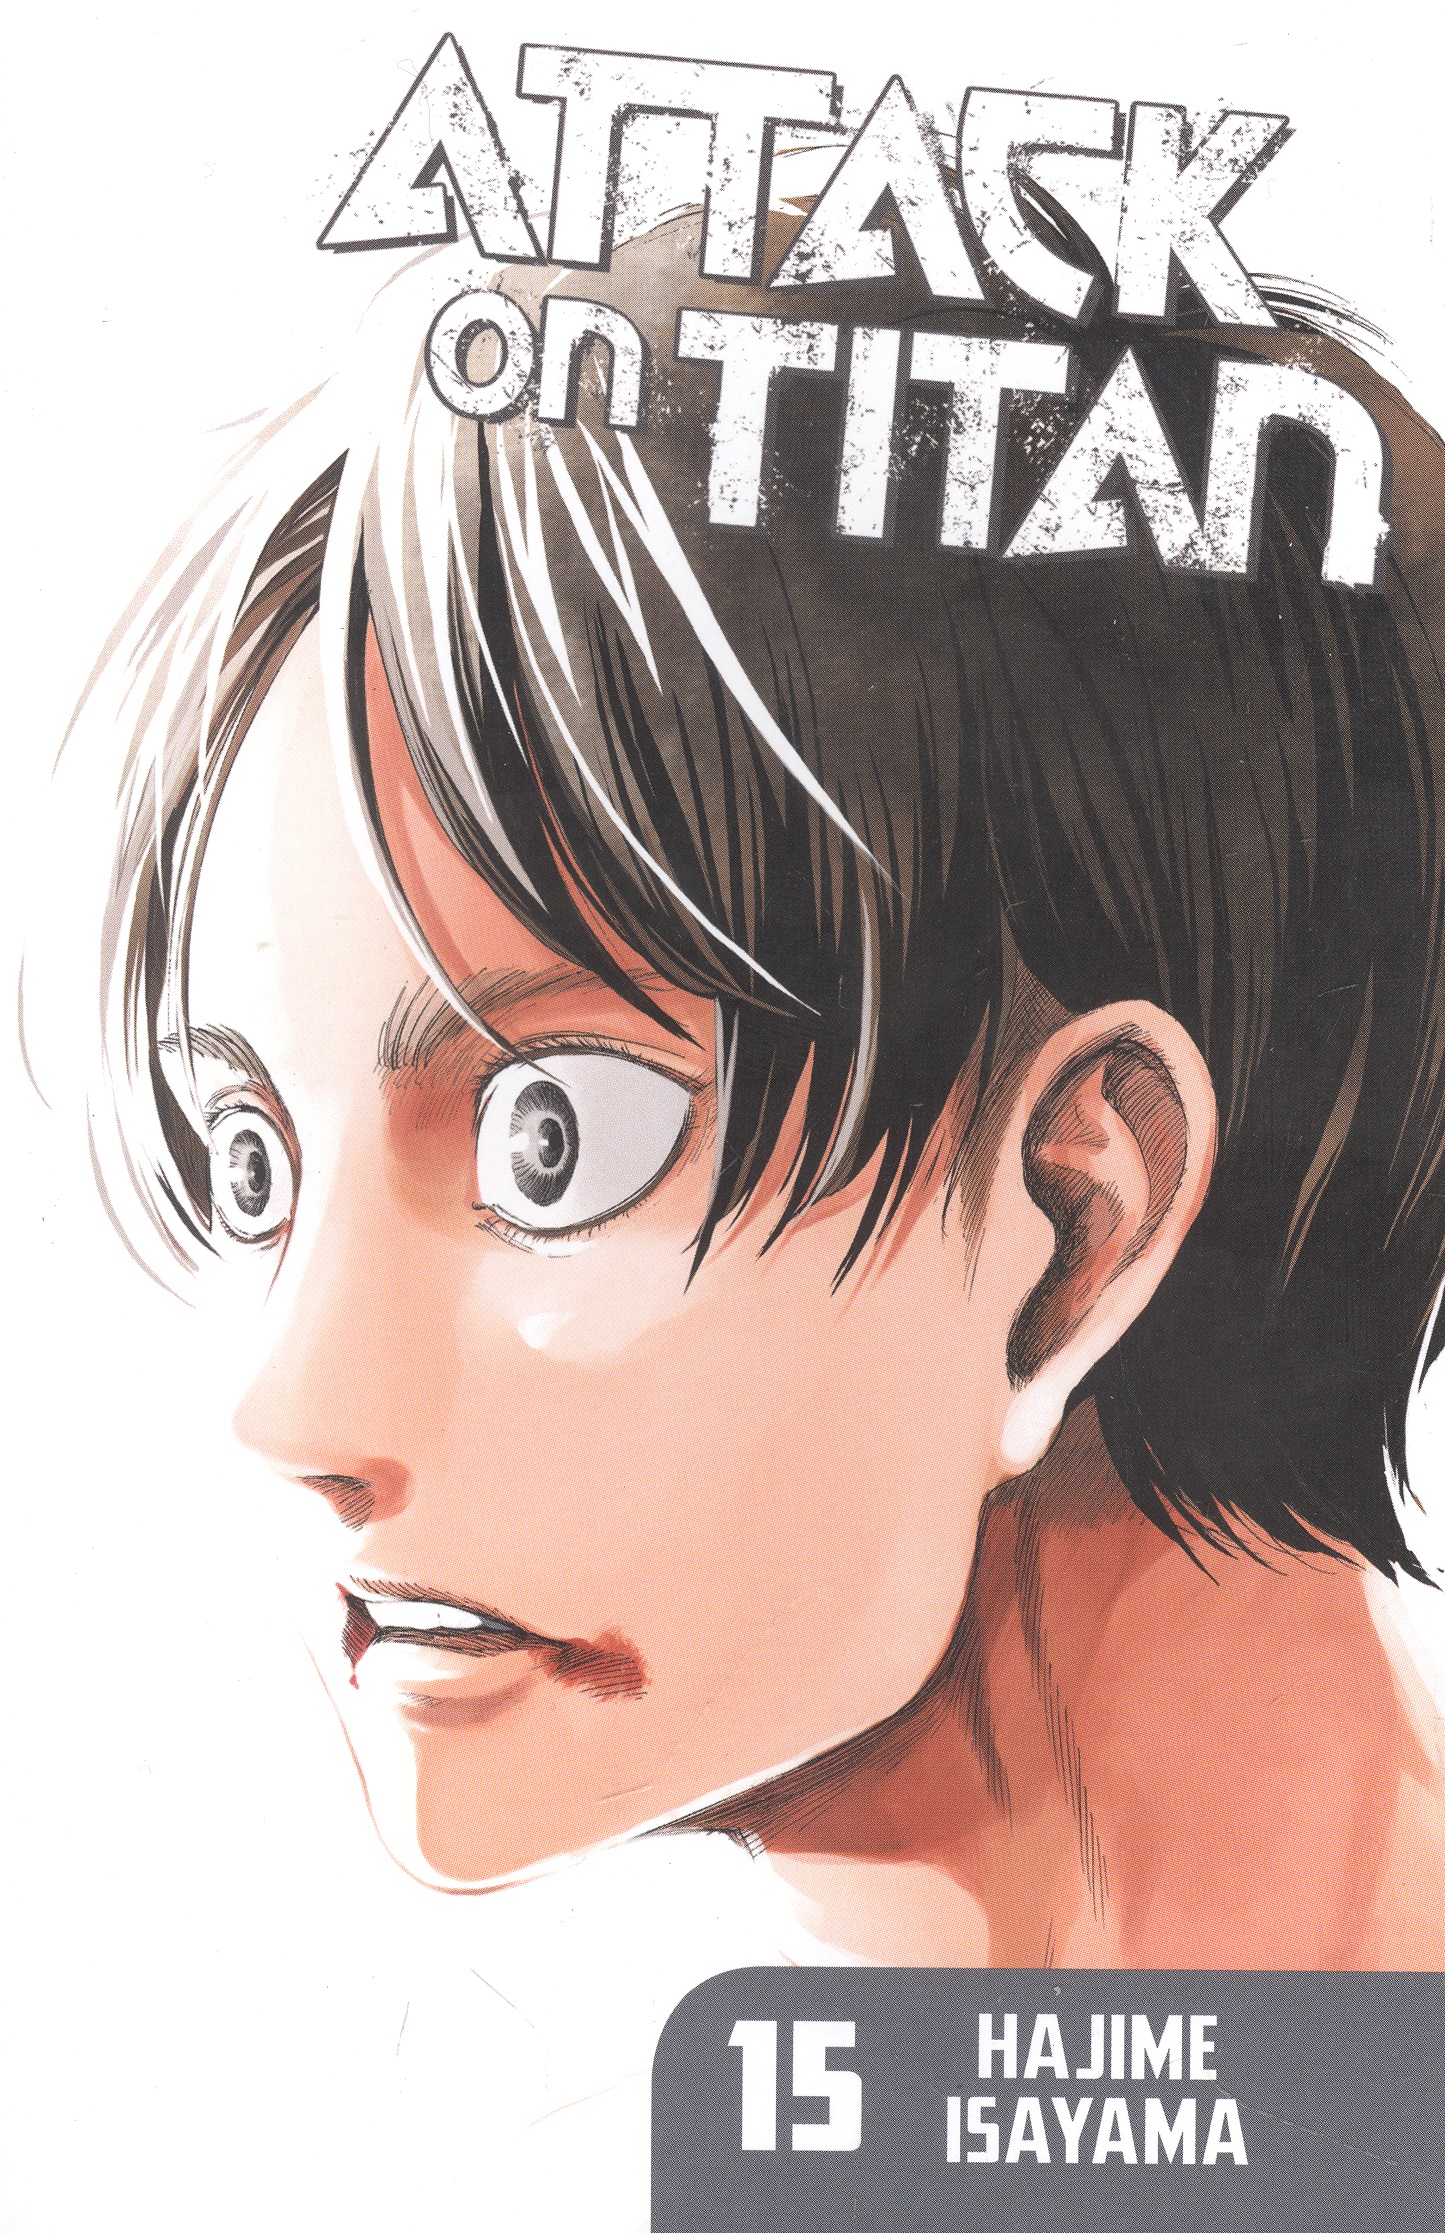 Isayama Hajime Attack on Titan 15 цена и фото